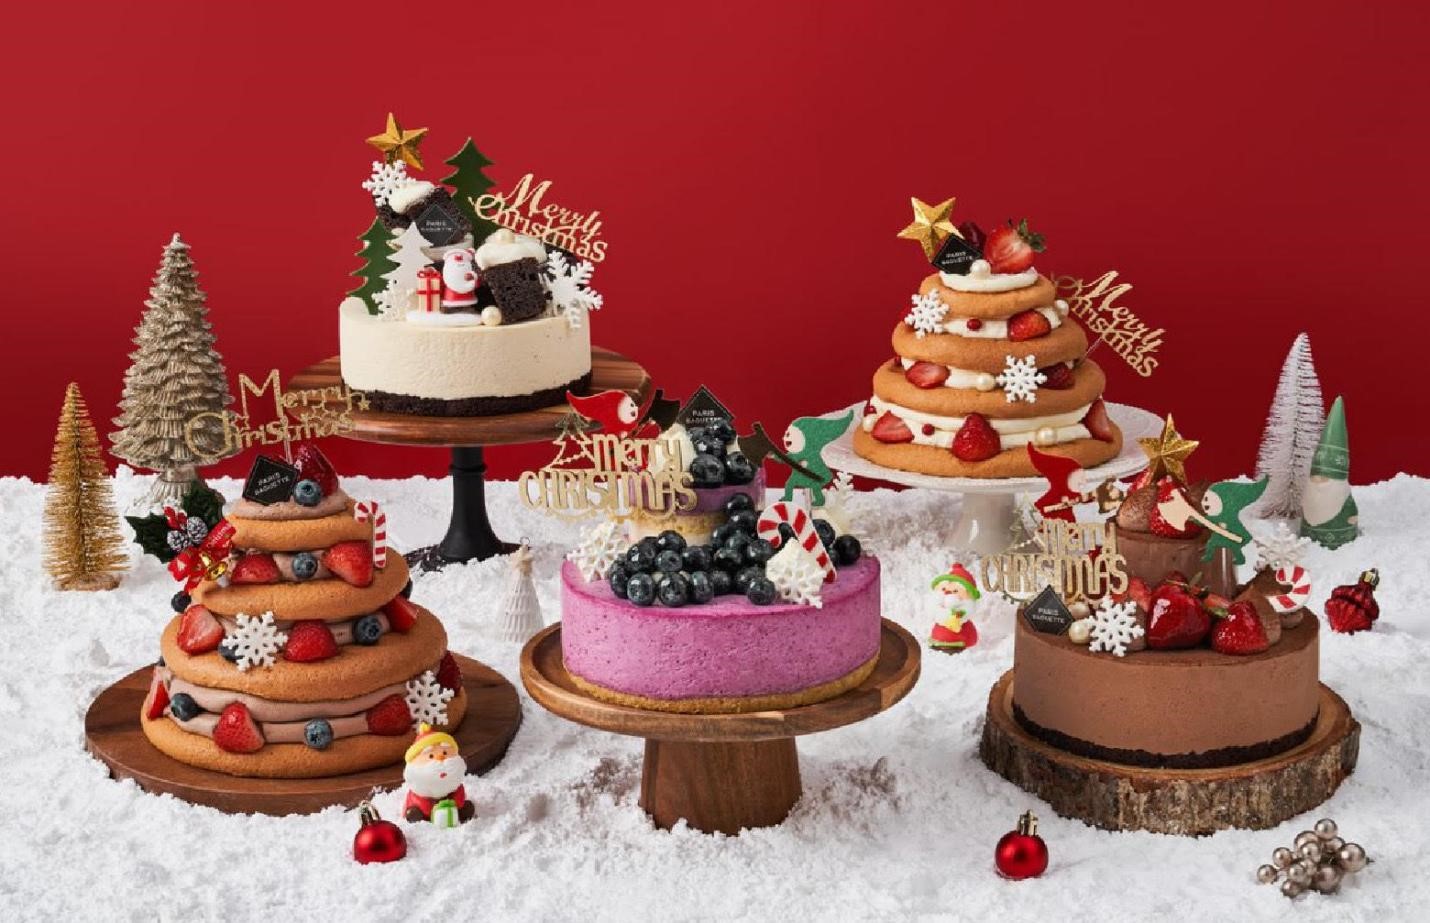 Món bánh sinh nhật noel: Hãy đến với thế giới của những chiếc bánh sinh nhật đặc biệt dành riêng cho mùa Giáng Sinh. Điểm nhấn của bữa tiệc sẽ là chiếc bánh sinh nhật Noel được thiết kế với những hình ảnh độc đáo và màu sắc tươi tắn. Bạn sẽ không thể cưỡng lại sự cá tính và quyến rũ mà món bánh này mang lại.